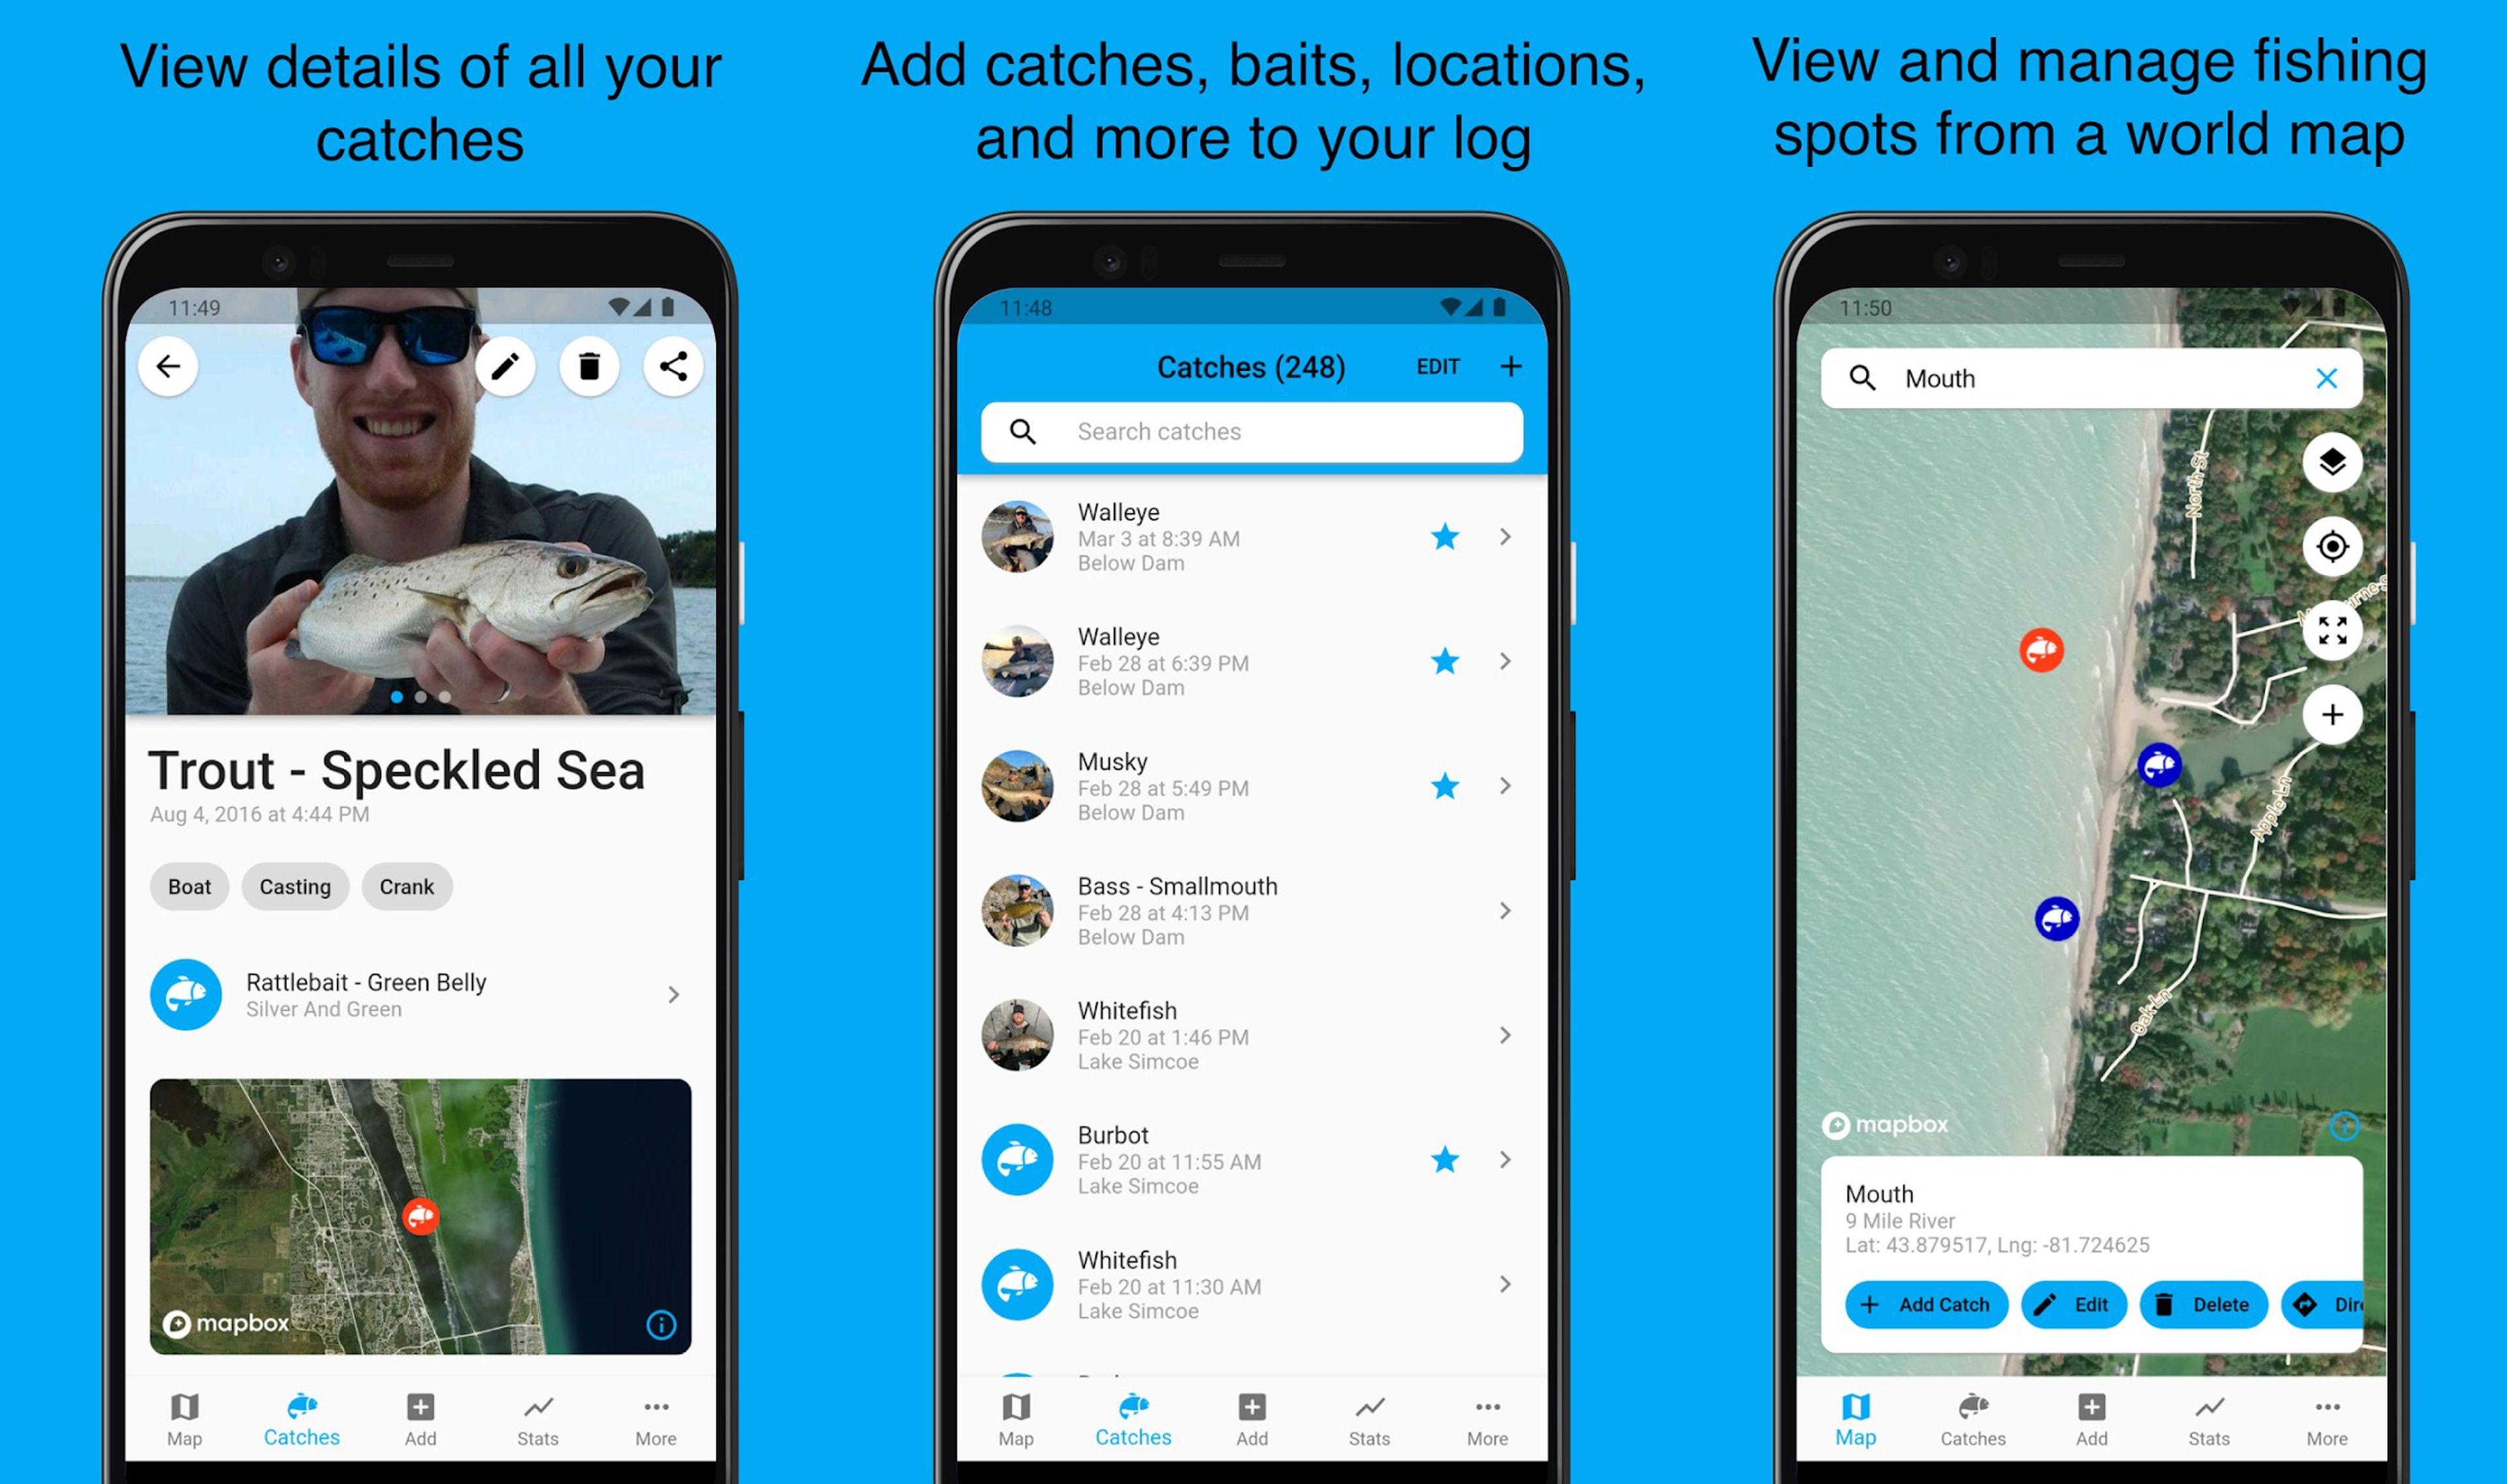 Las 7 mejores aplicaciones Android que tienes que instalar si sales a pescar regularmente